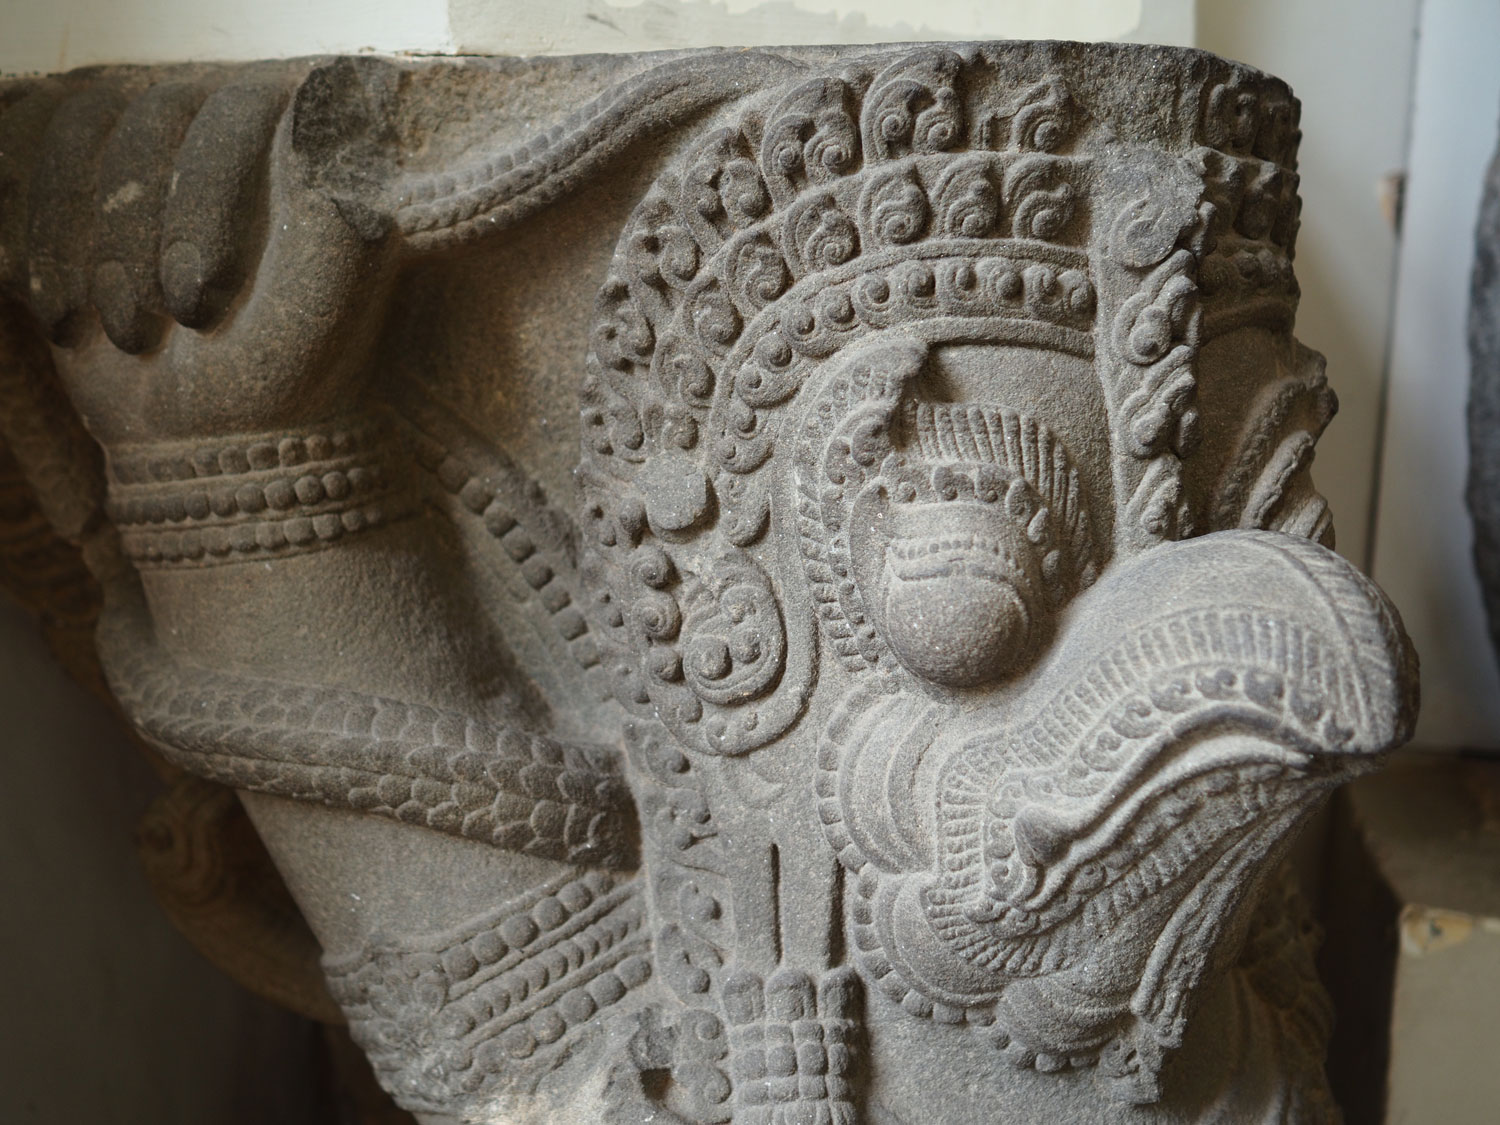 Sa thạch Chămpa hình tượng chim thần Garuda